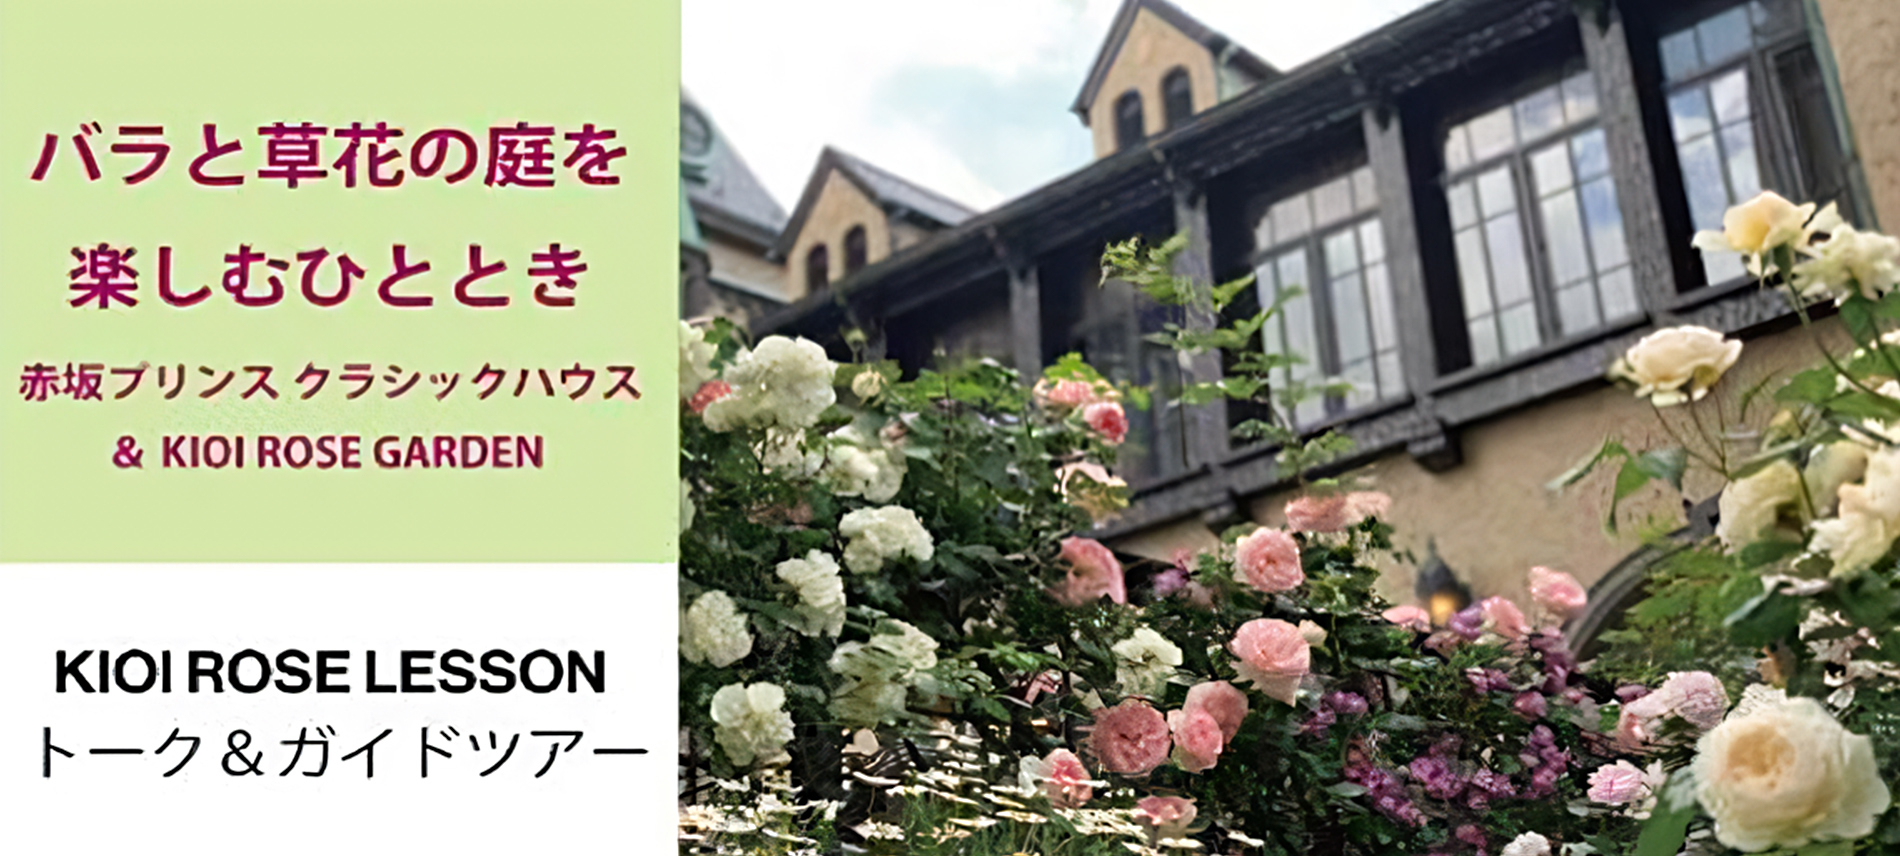 バラと草花の庭を楽しむひととき　ー赤坂プリンス クラシックハウス&KIOI ROSE GARDENー